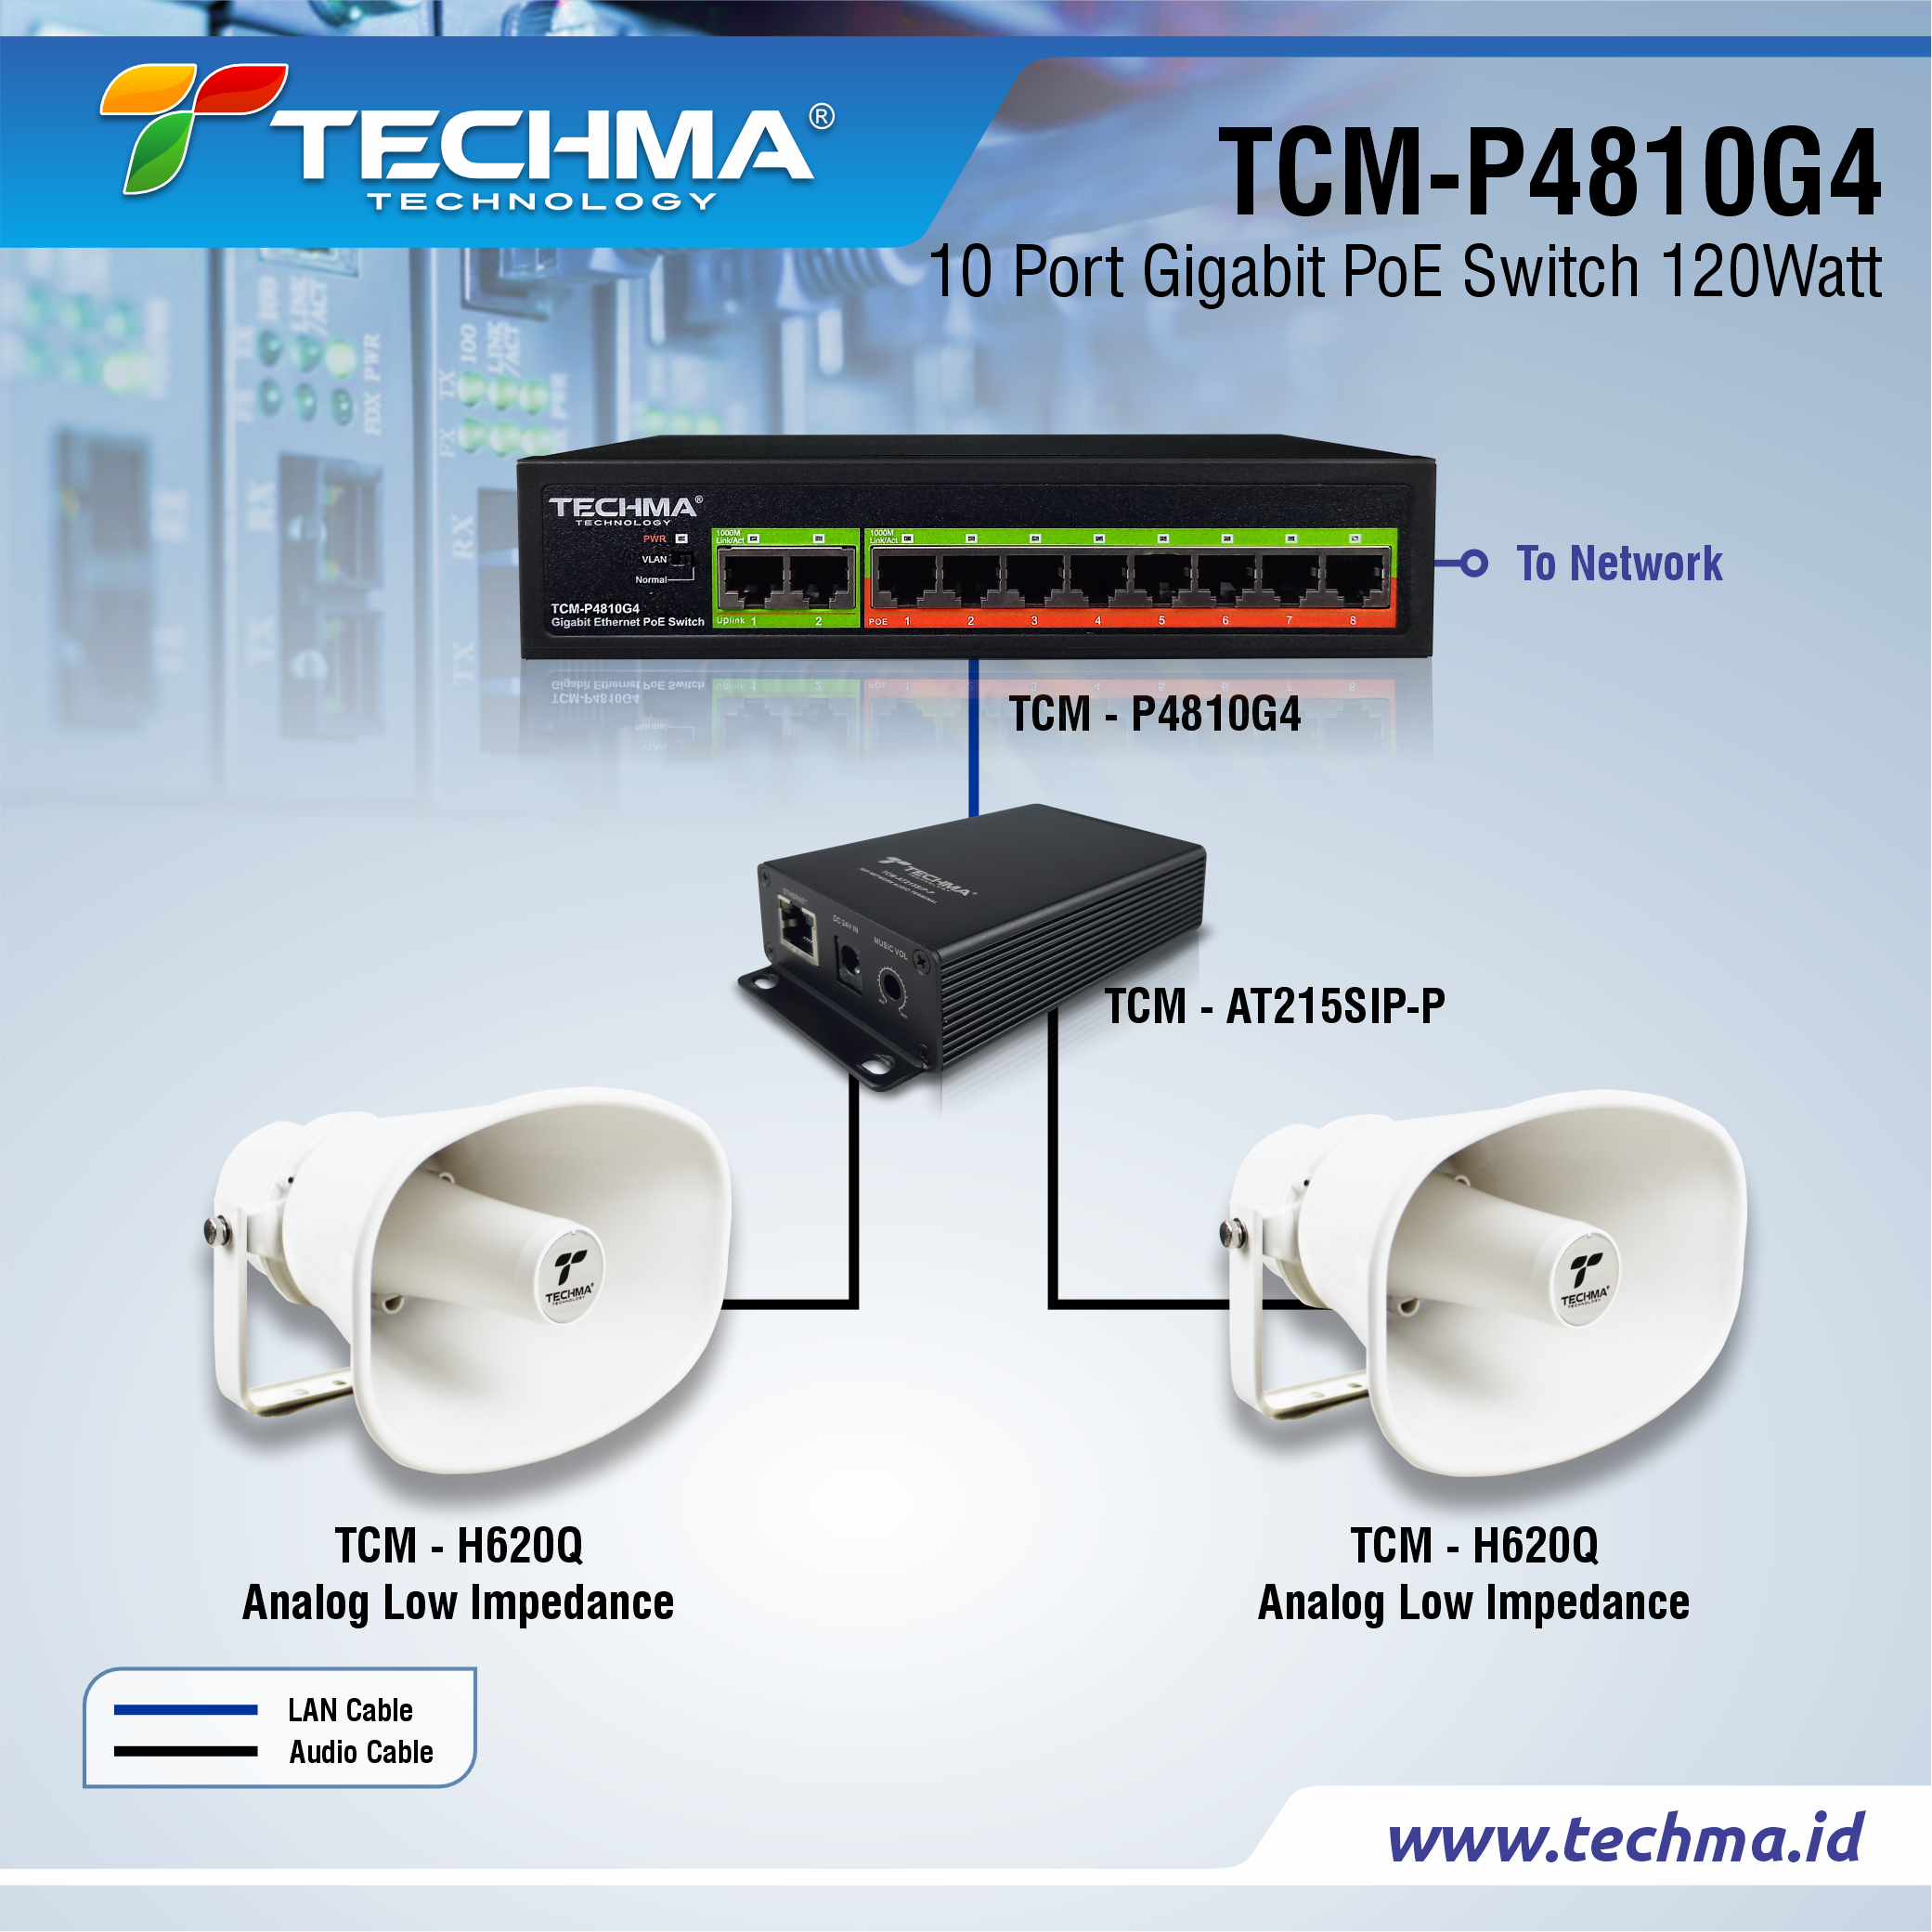 TCM-P4810G4 web 3